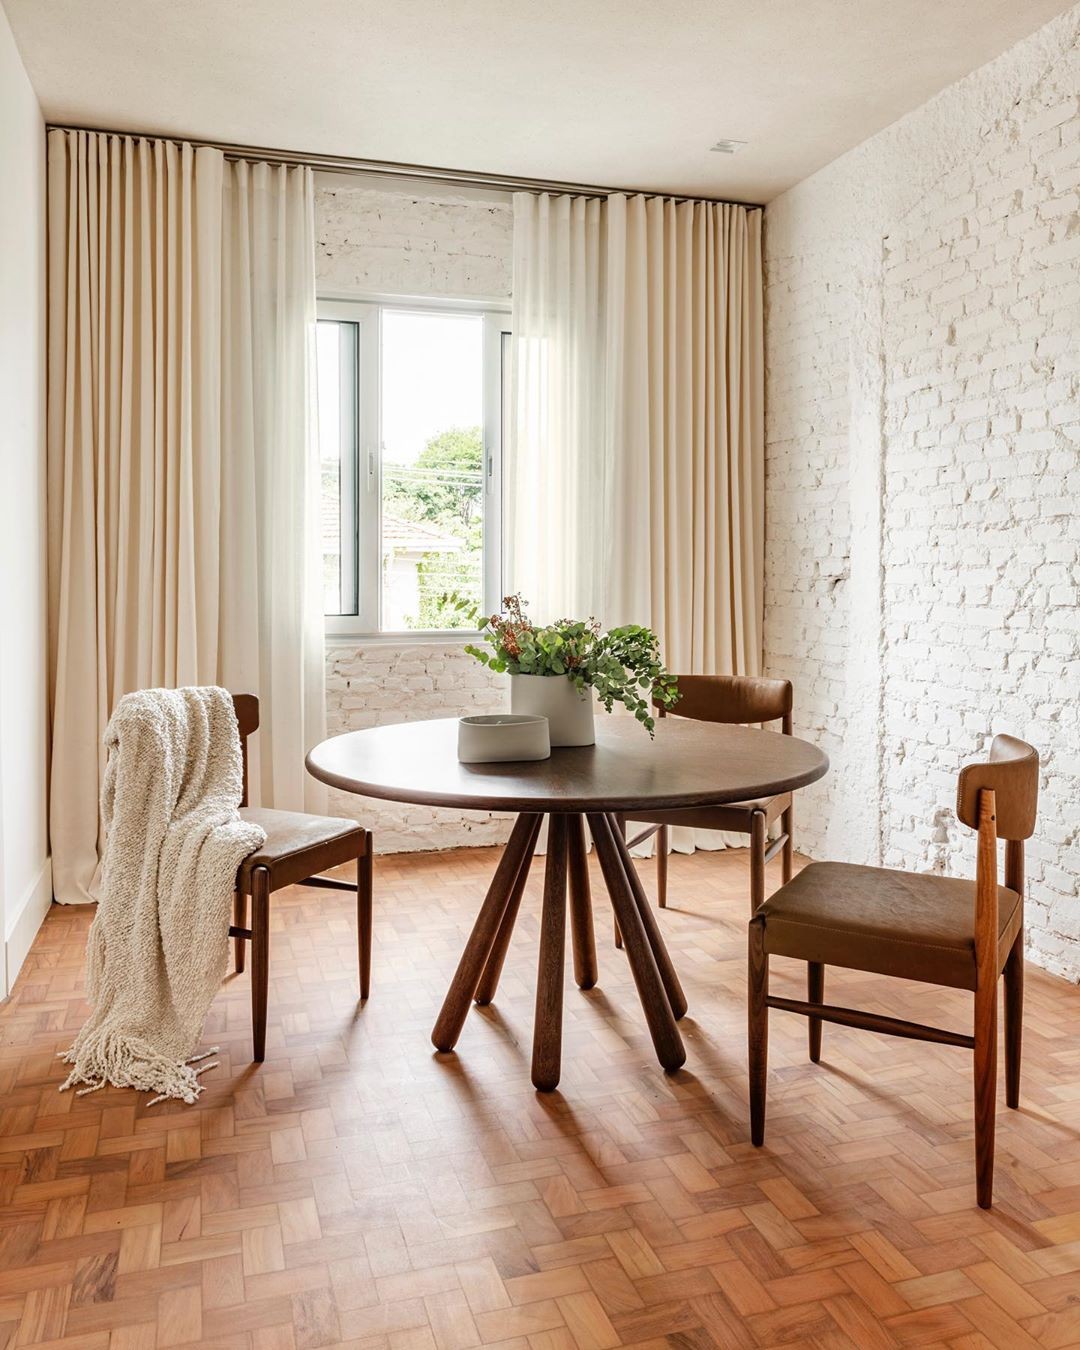 Décor do dia: sala de jantar com decoração minimalista e tijolos aparentes (Foto: Renato Navarro)